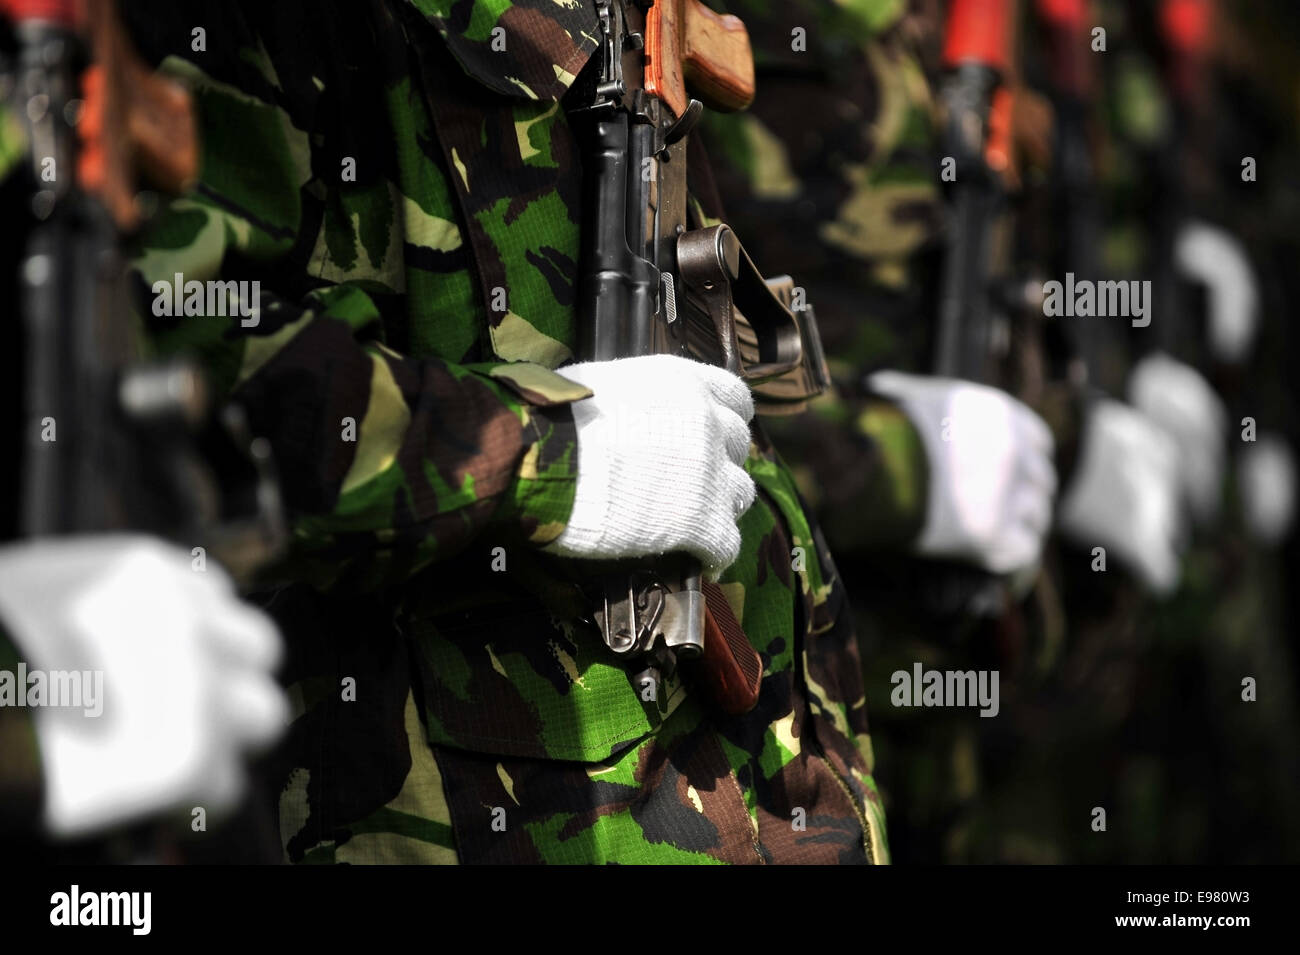 Dettaglio con un soldato di mano su un kalashnikov AKM fucile durante una parata militare Foto Stock